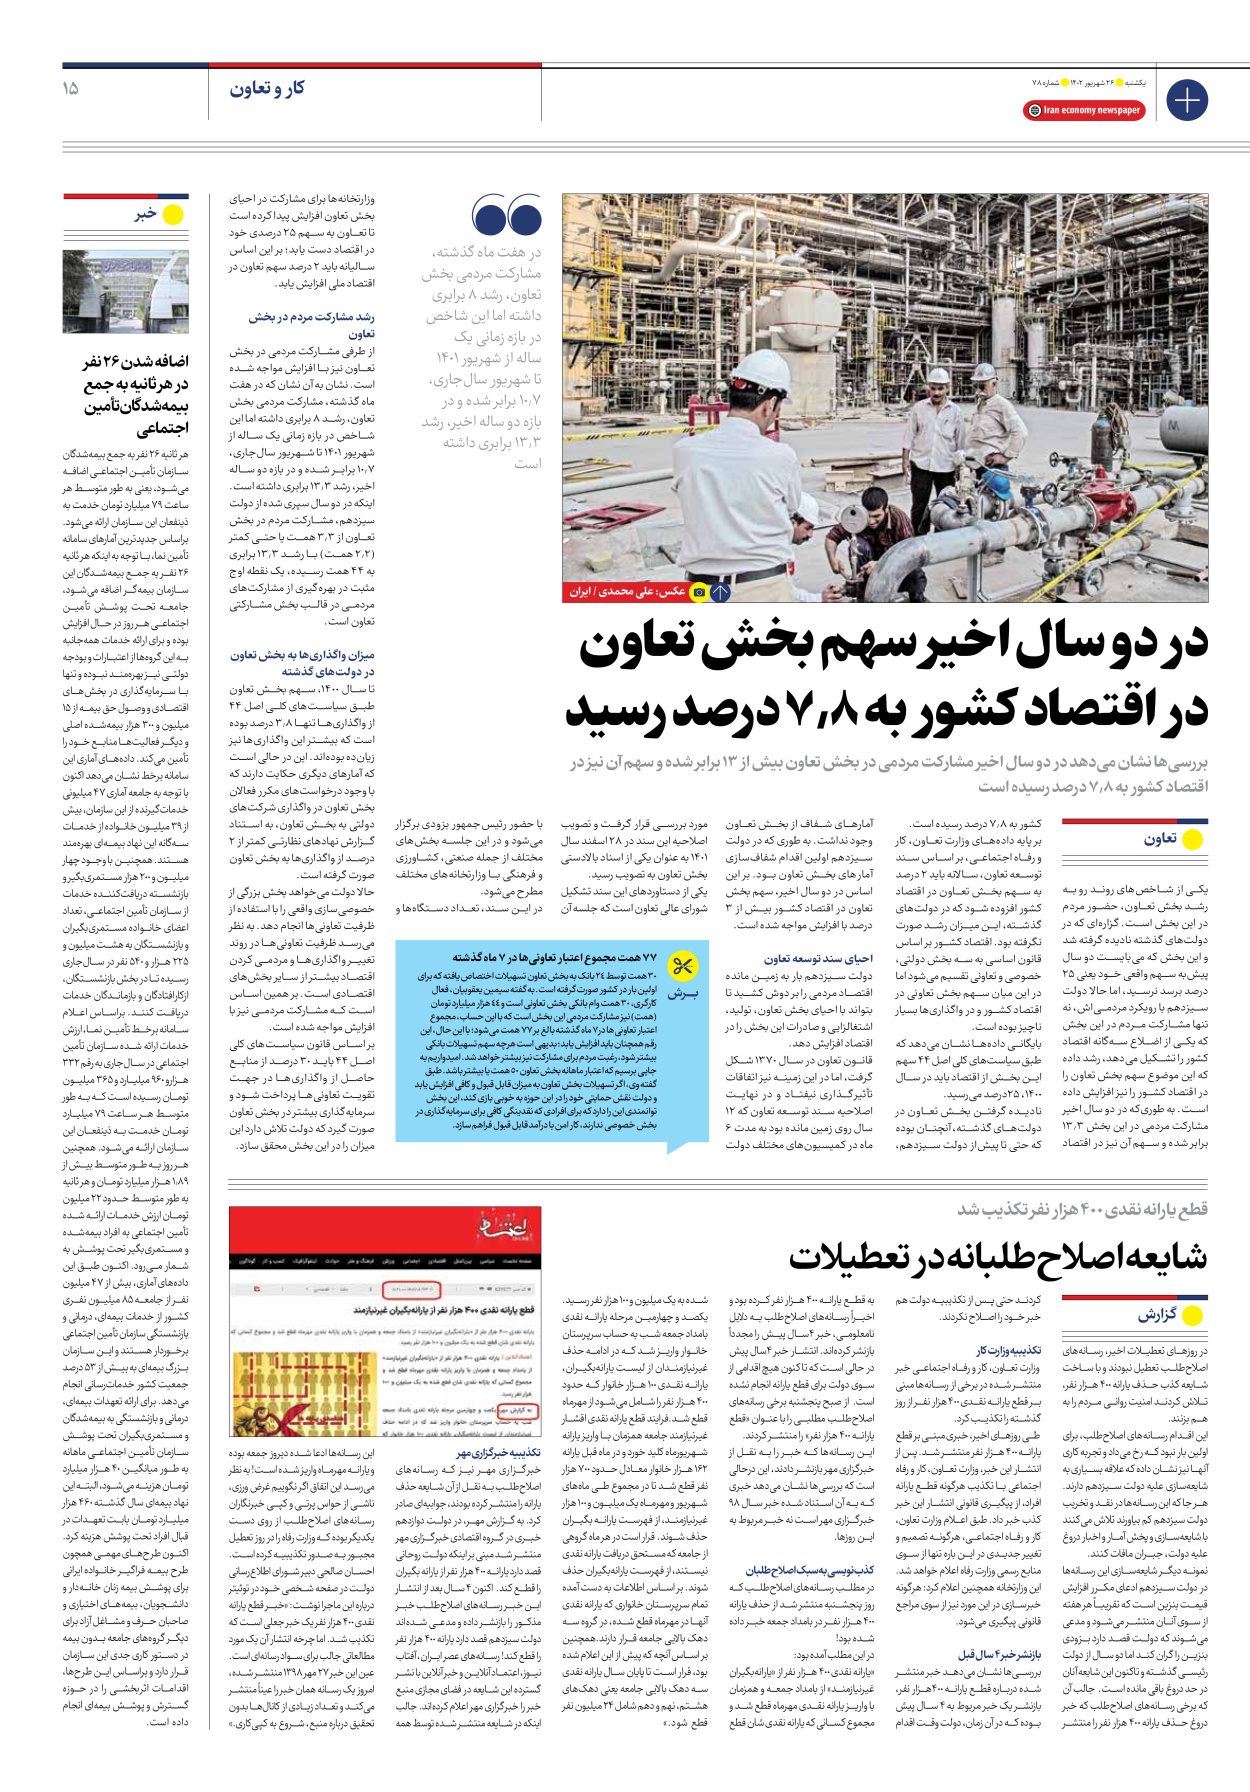 روزنامه ایران اقتصادی - شماره هفتاد و هشت - ۲۶ شهریور ۱۴۰۲ - صفحه ۱۵